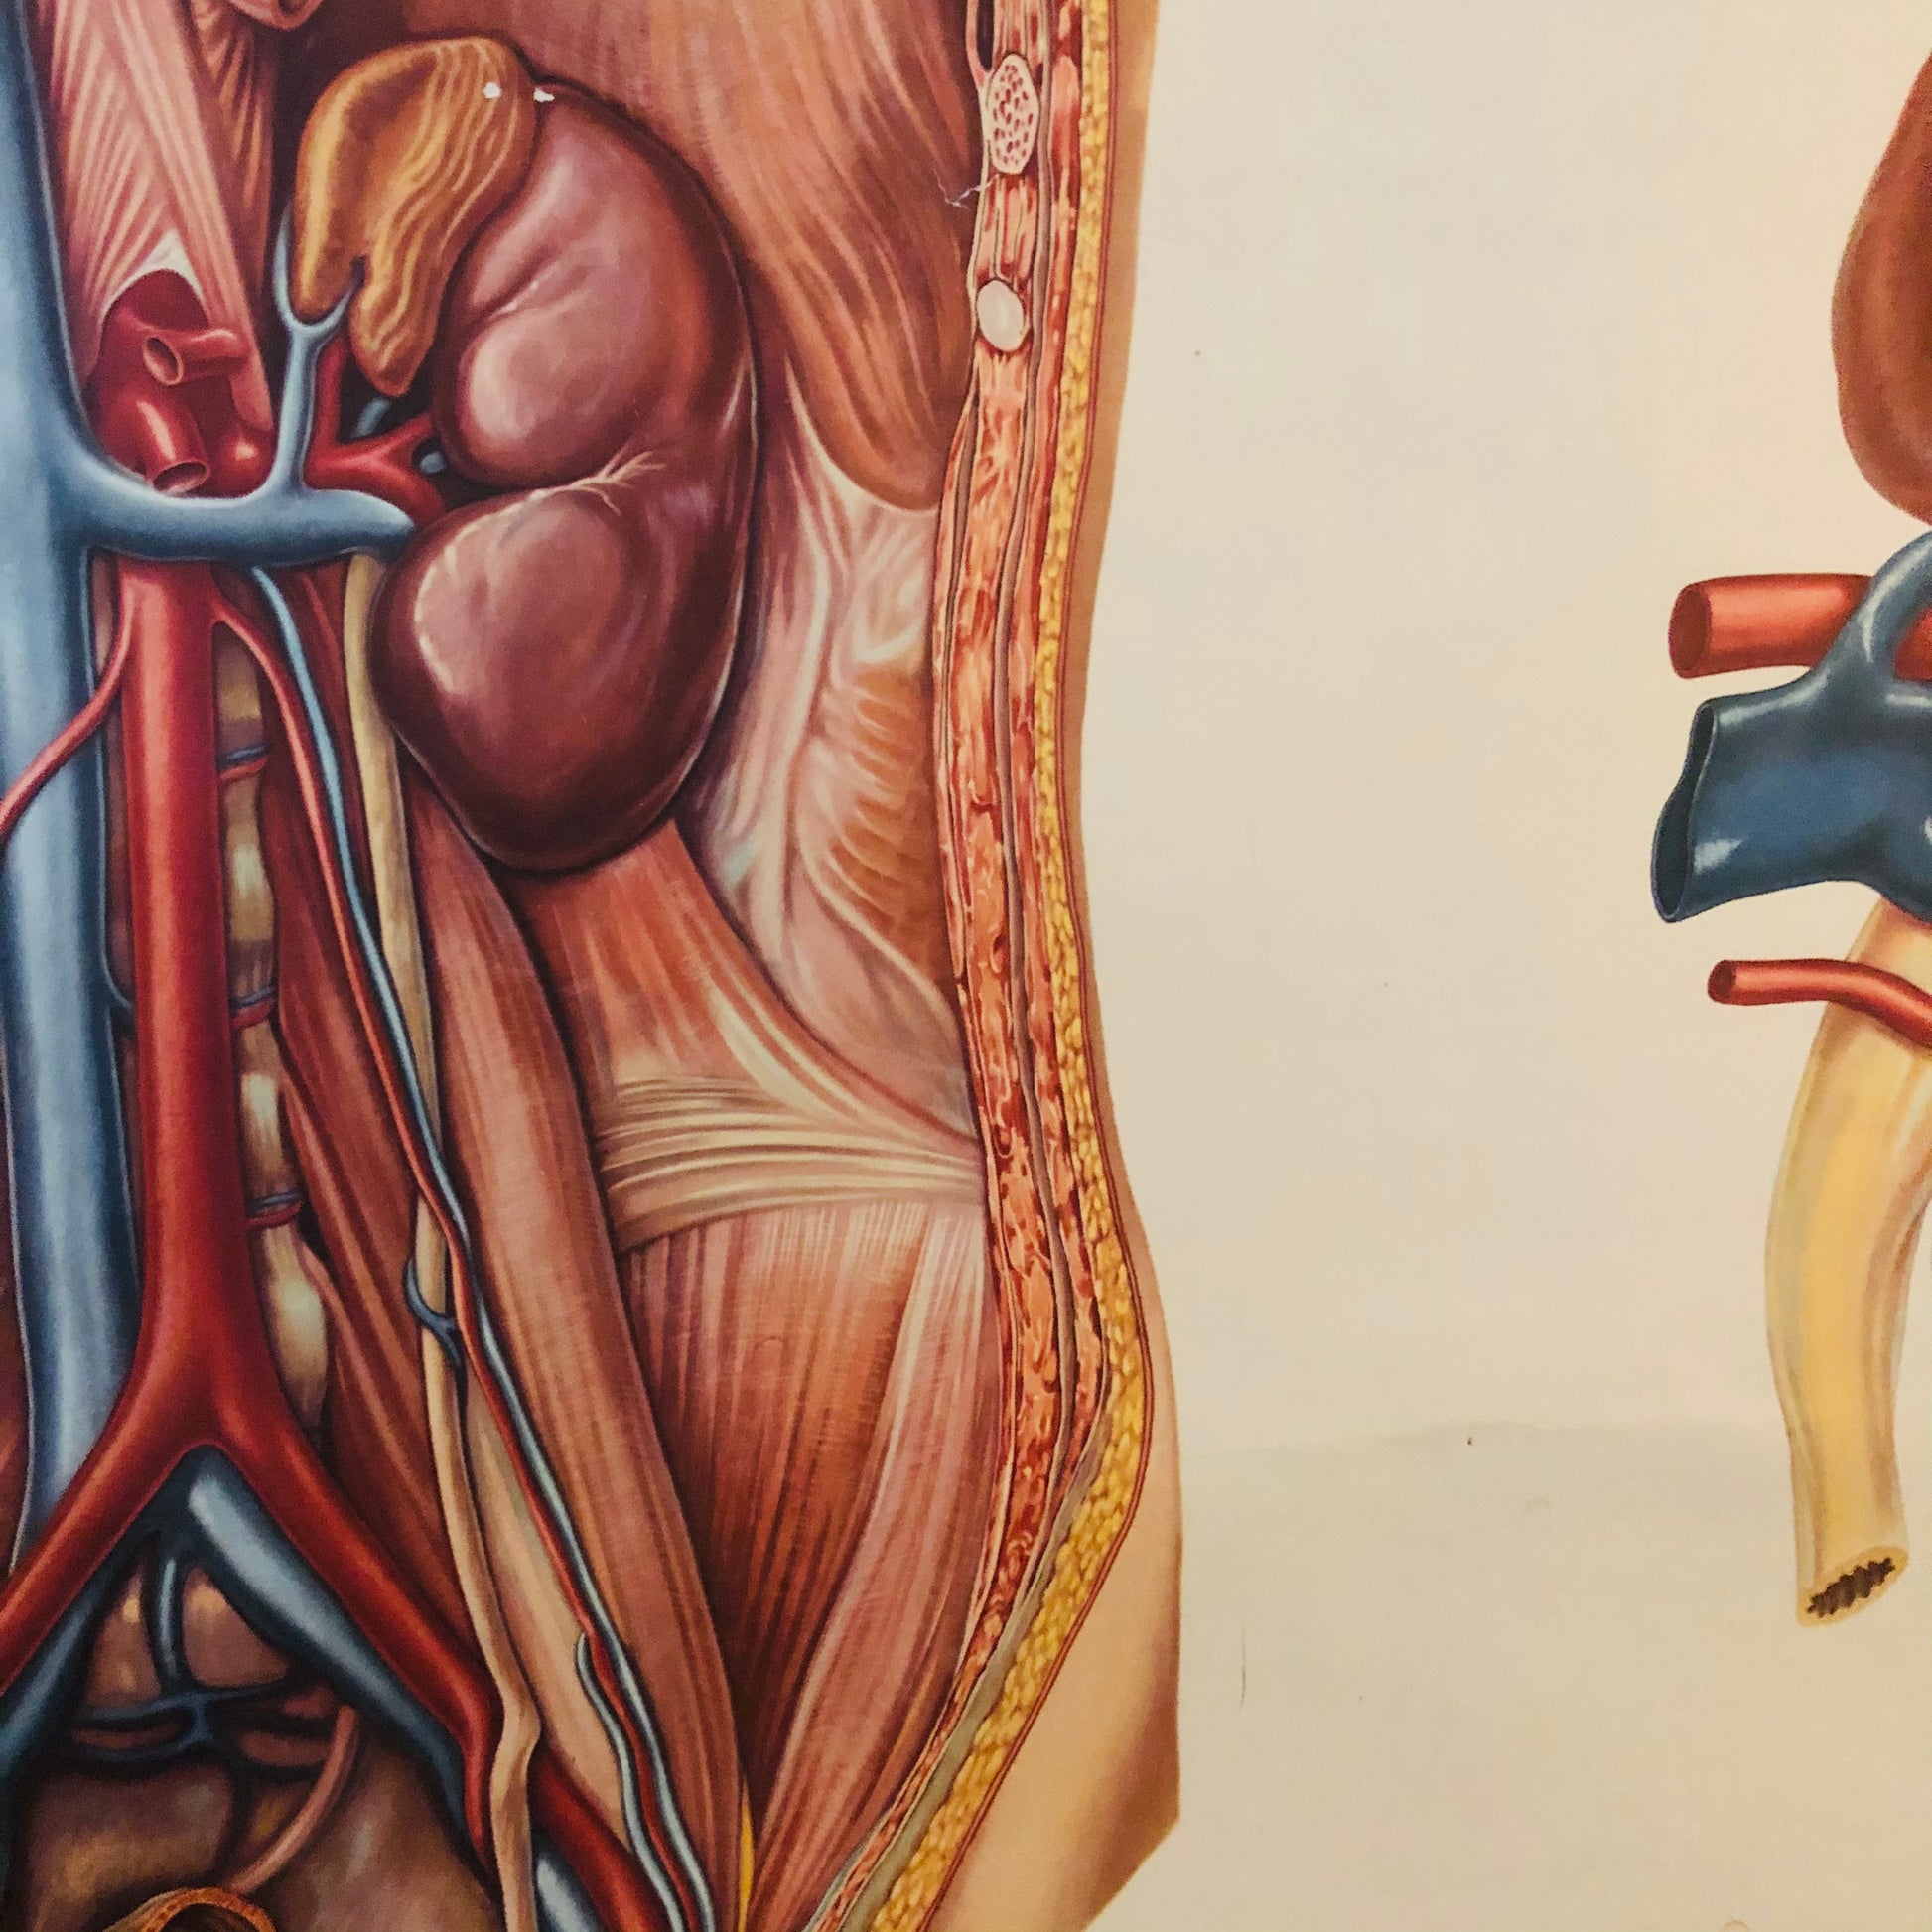 Vintage Anatomy Medical Kidney Poster Deutsches Hygiene Museum Dresden